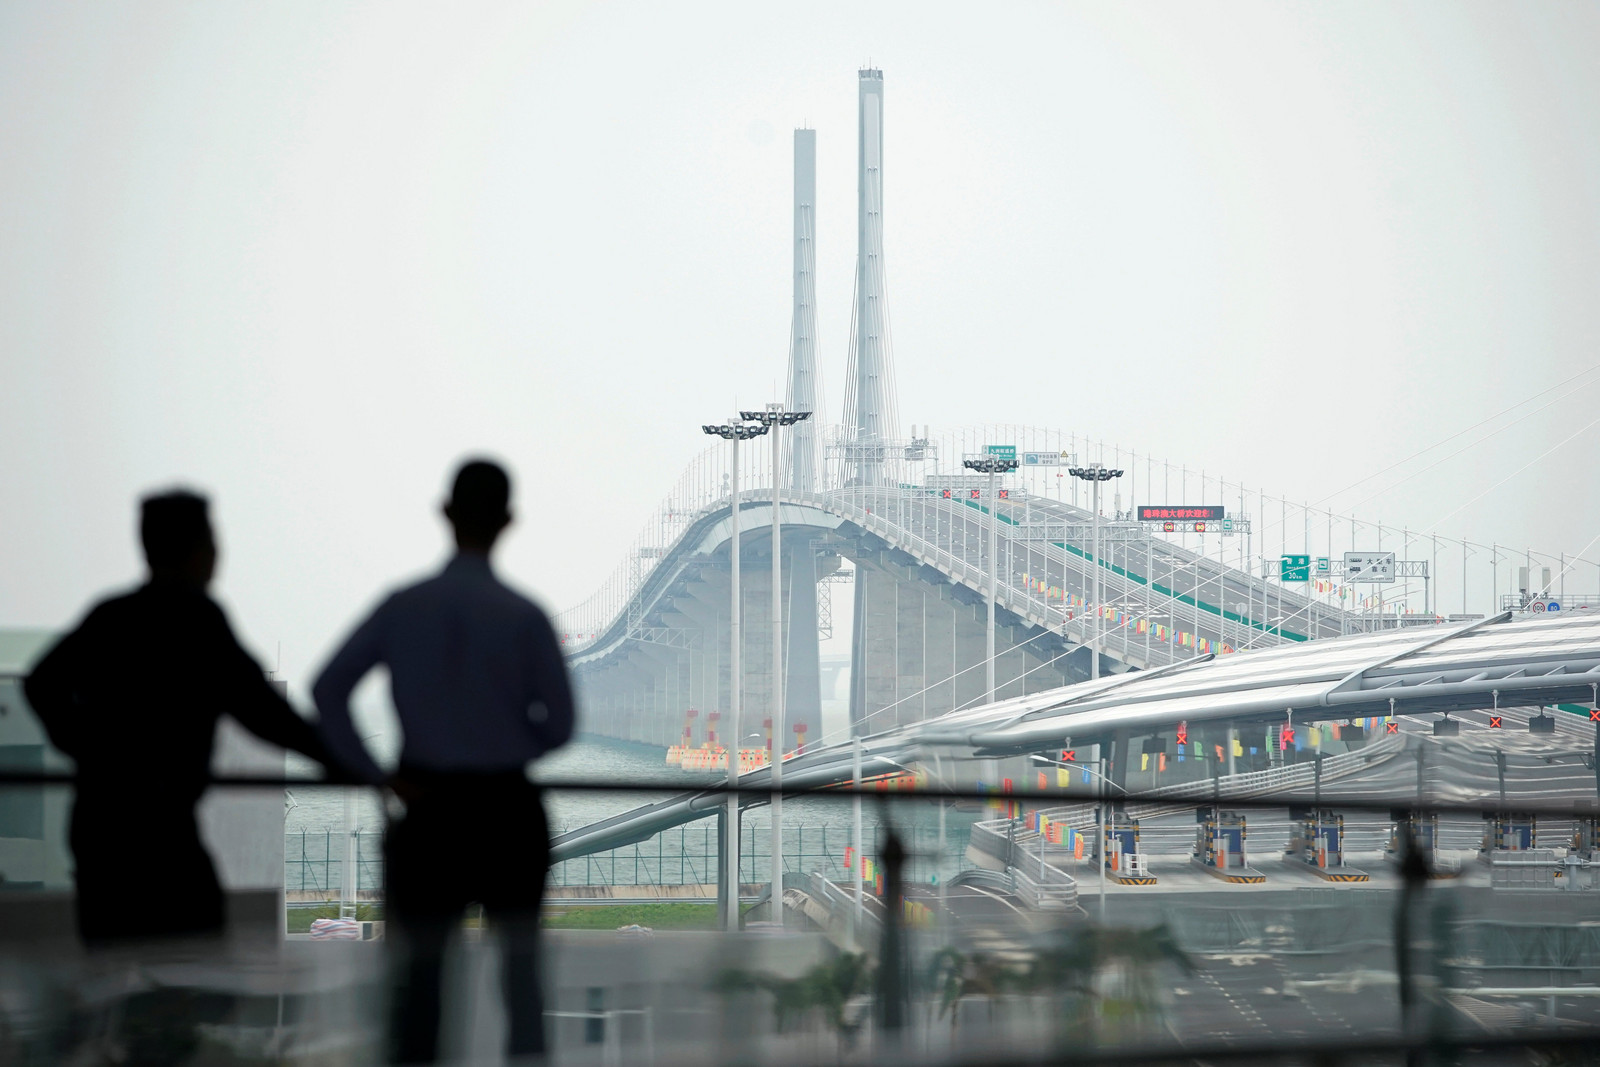 Espantosas imagens da maior ponte do mundo que liga Hong Kong a Macau